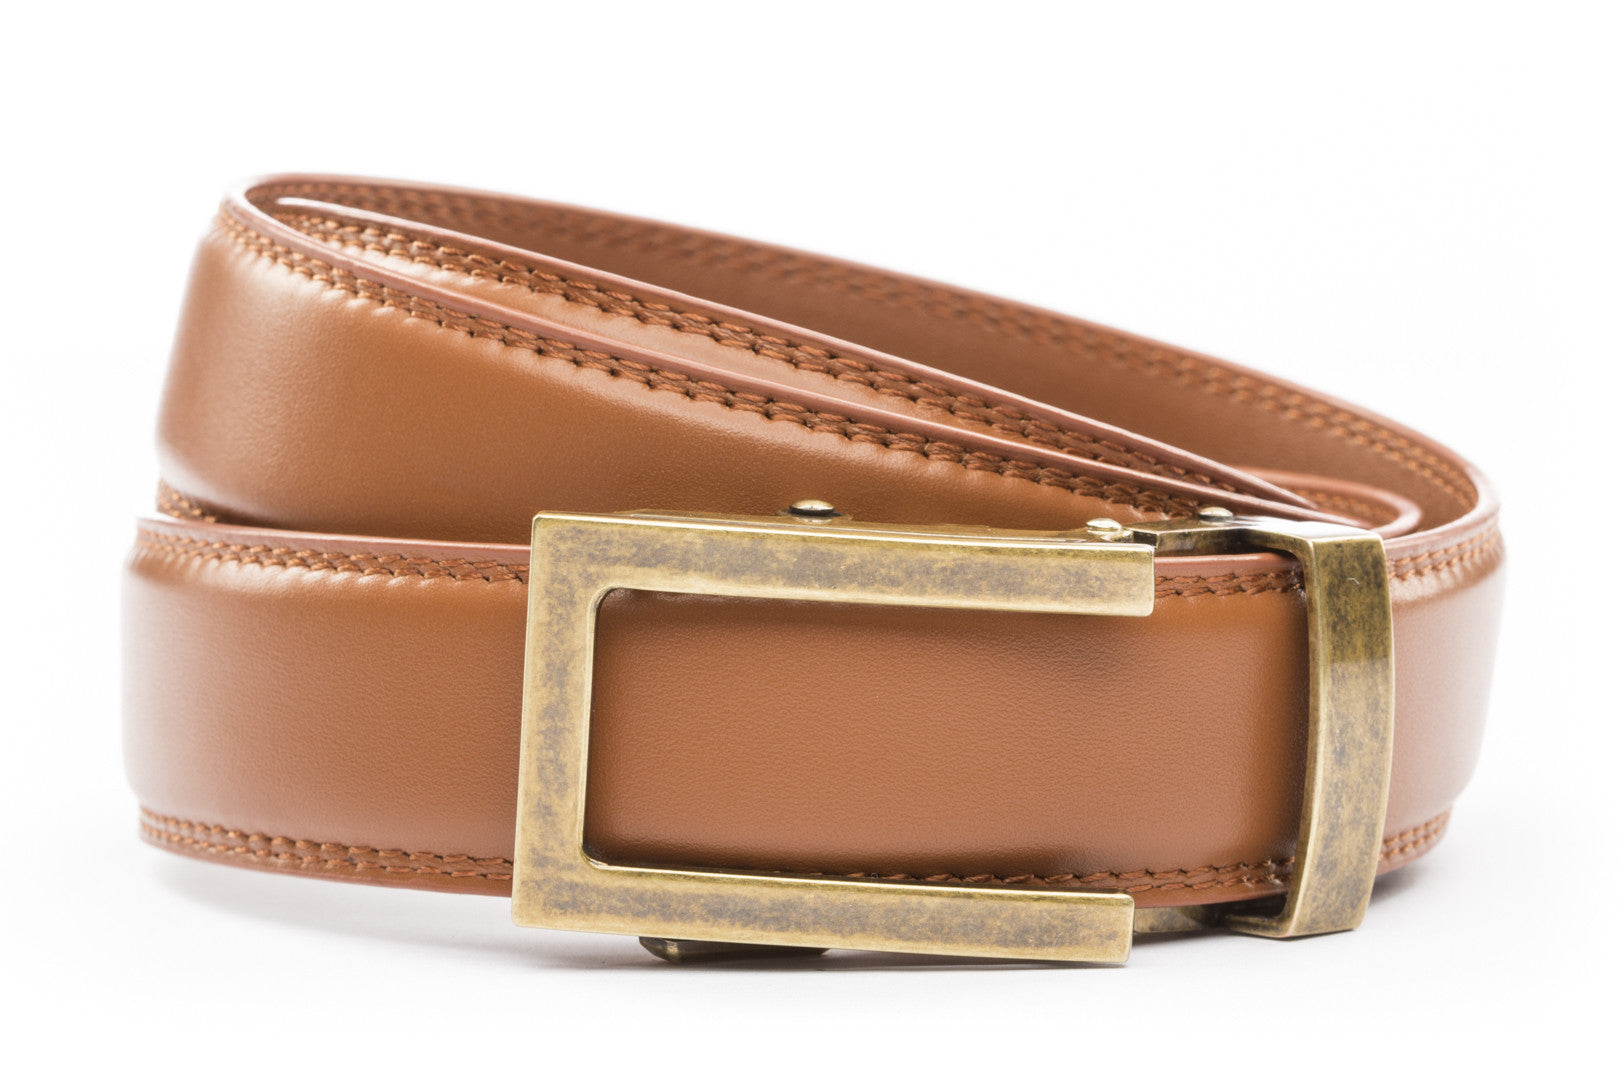 Men's Tan Leather Belt, Ratchet Belt Without Holes